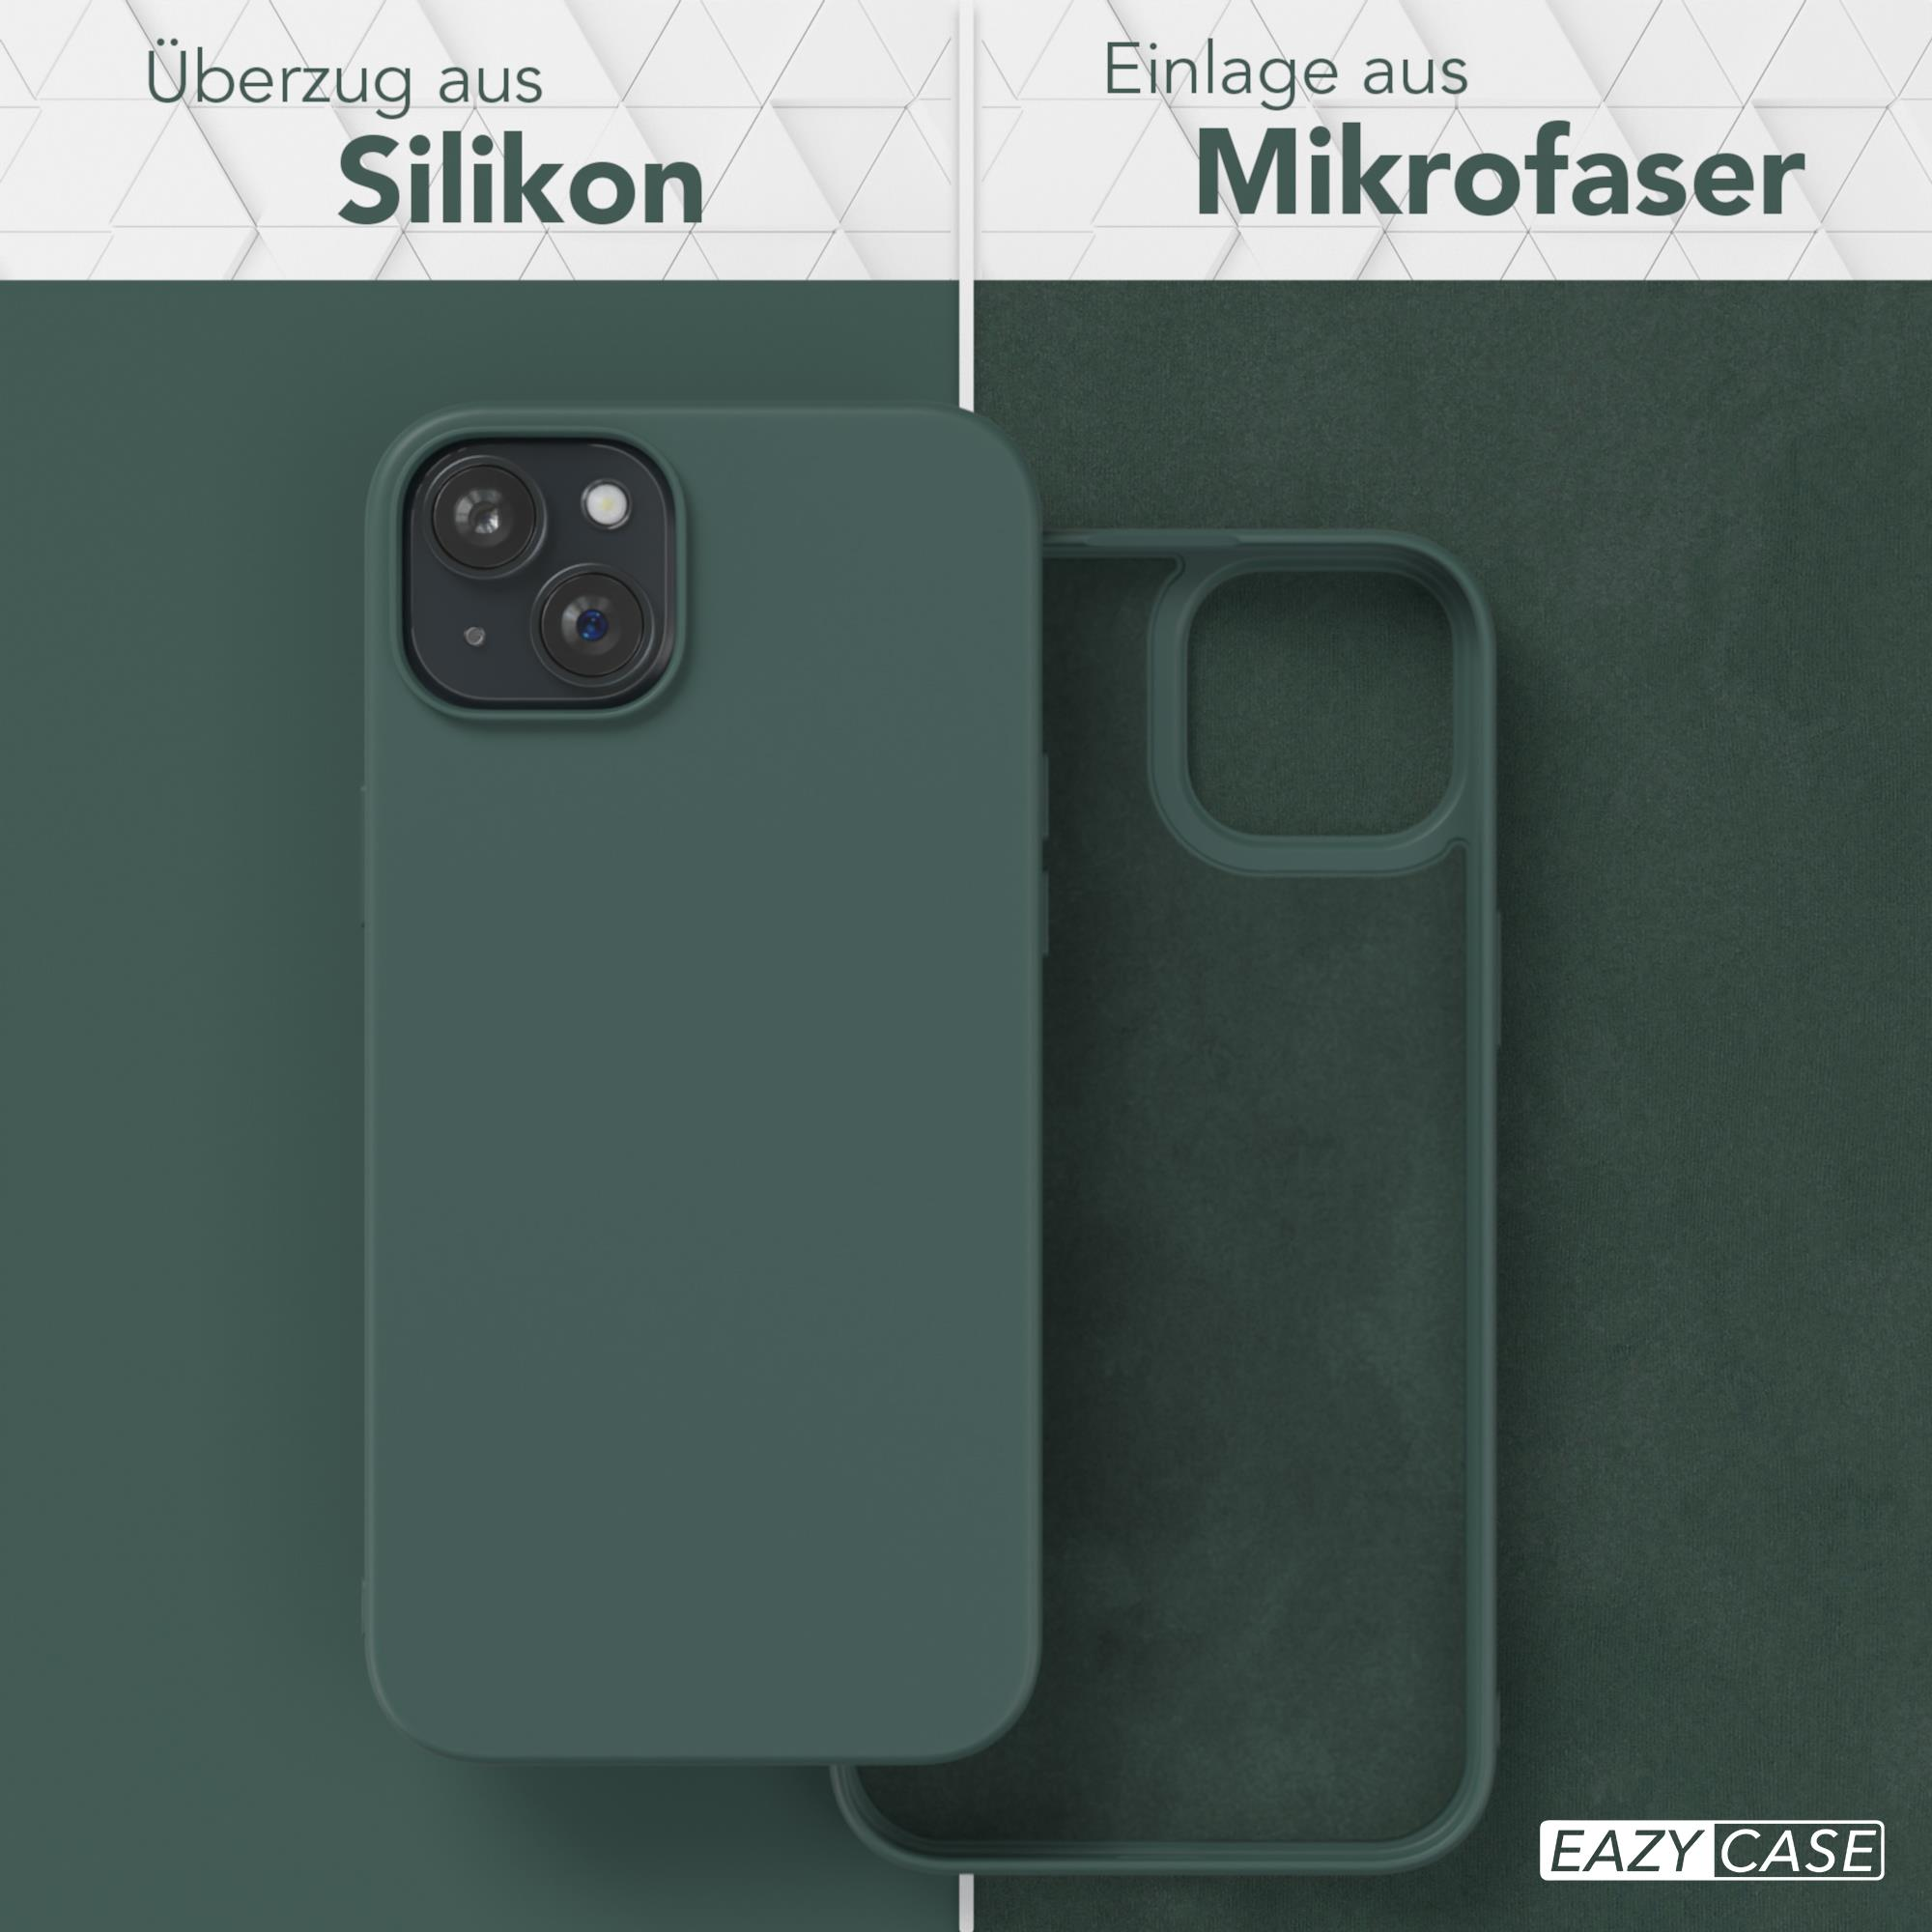 EAZY CASE TPU Silikon Handycase Matt, Nachtgrün 15 iPhone / Backcover, Plus, Apple, Grün